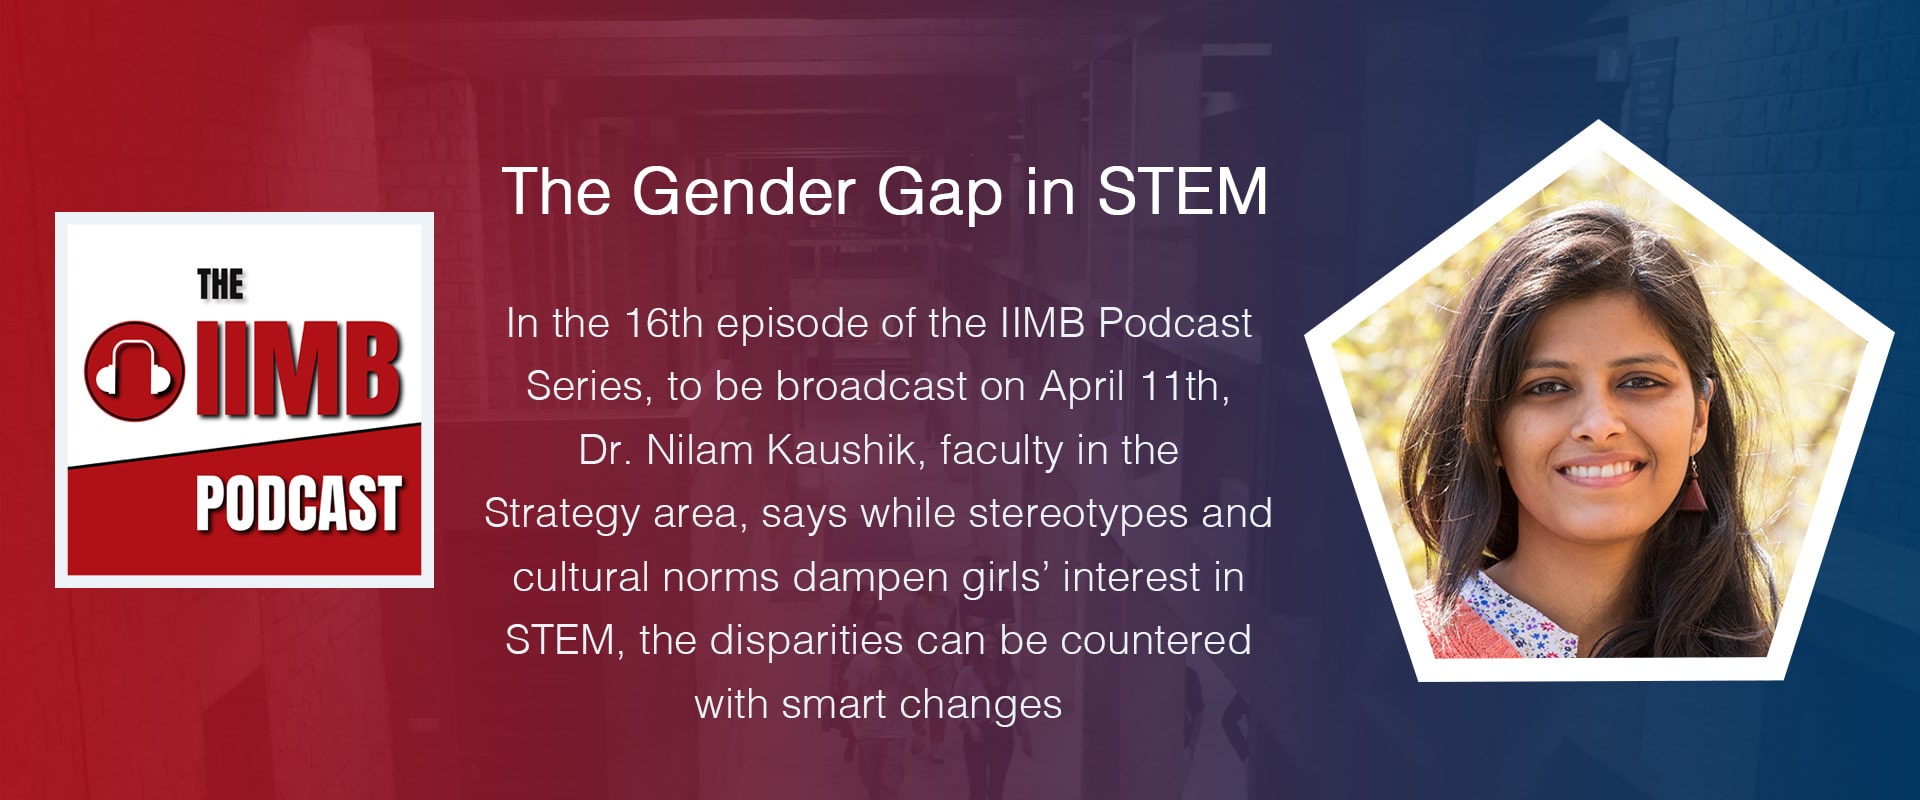 The Gender Gap in STEM